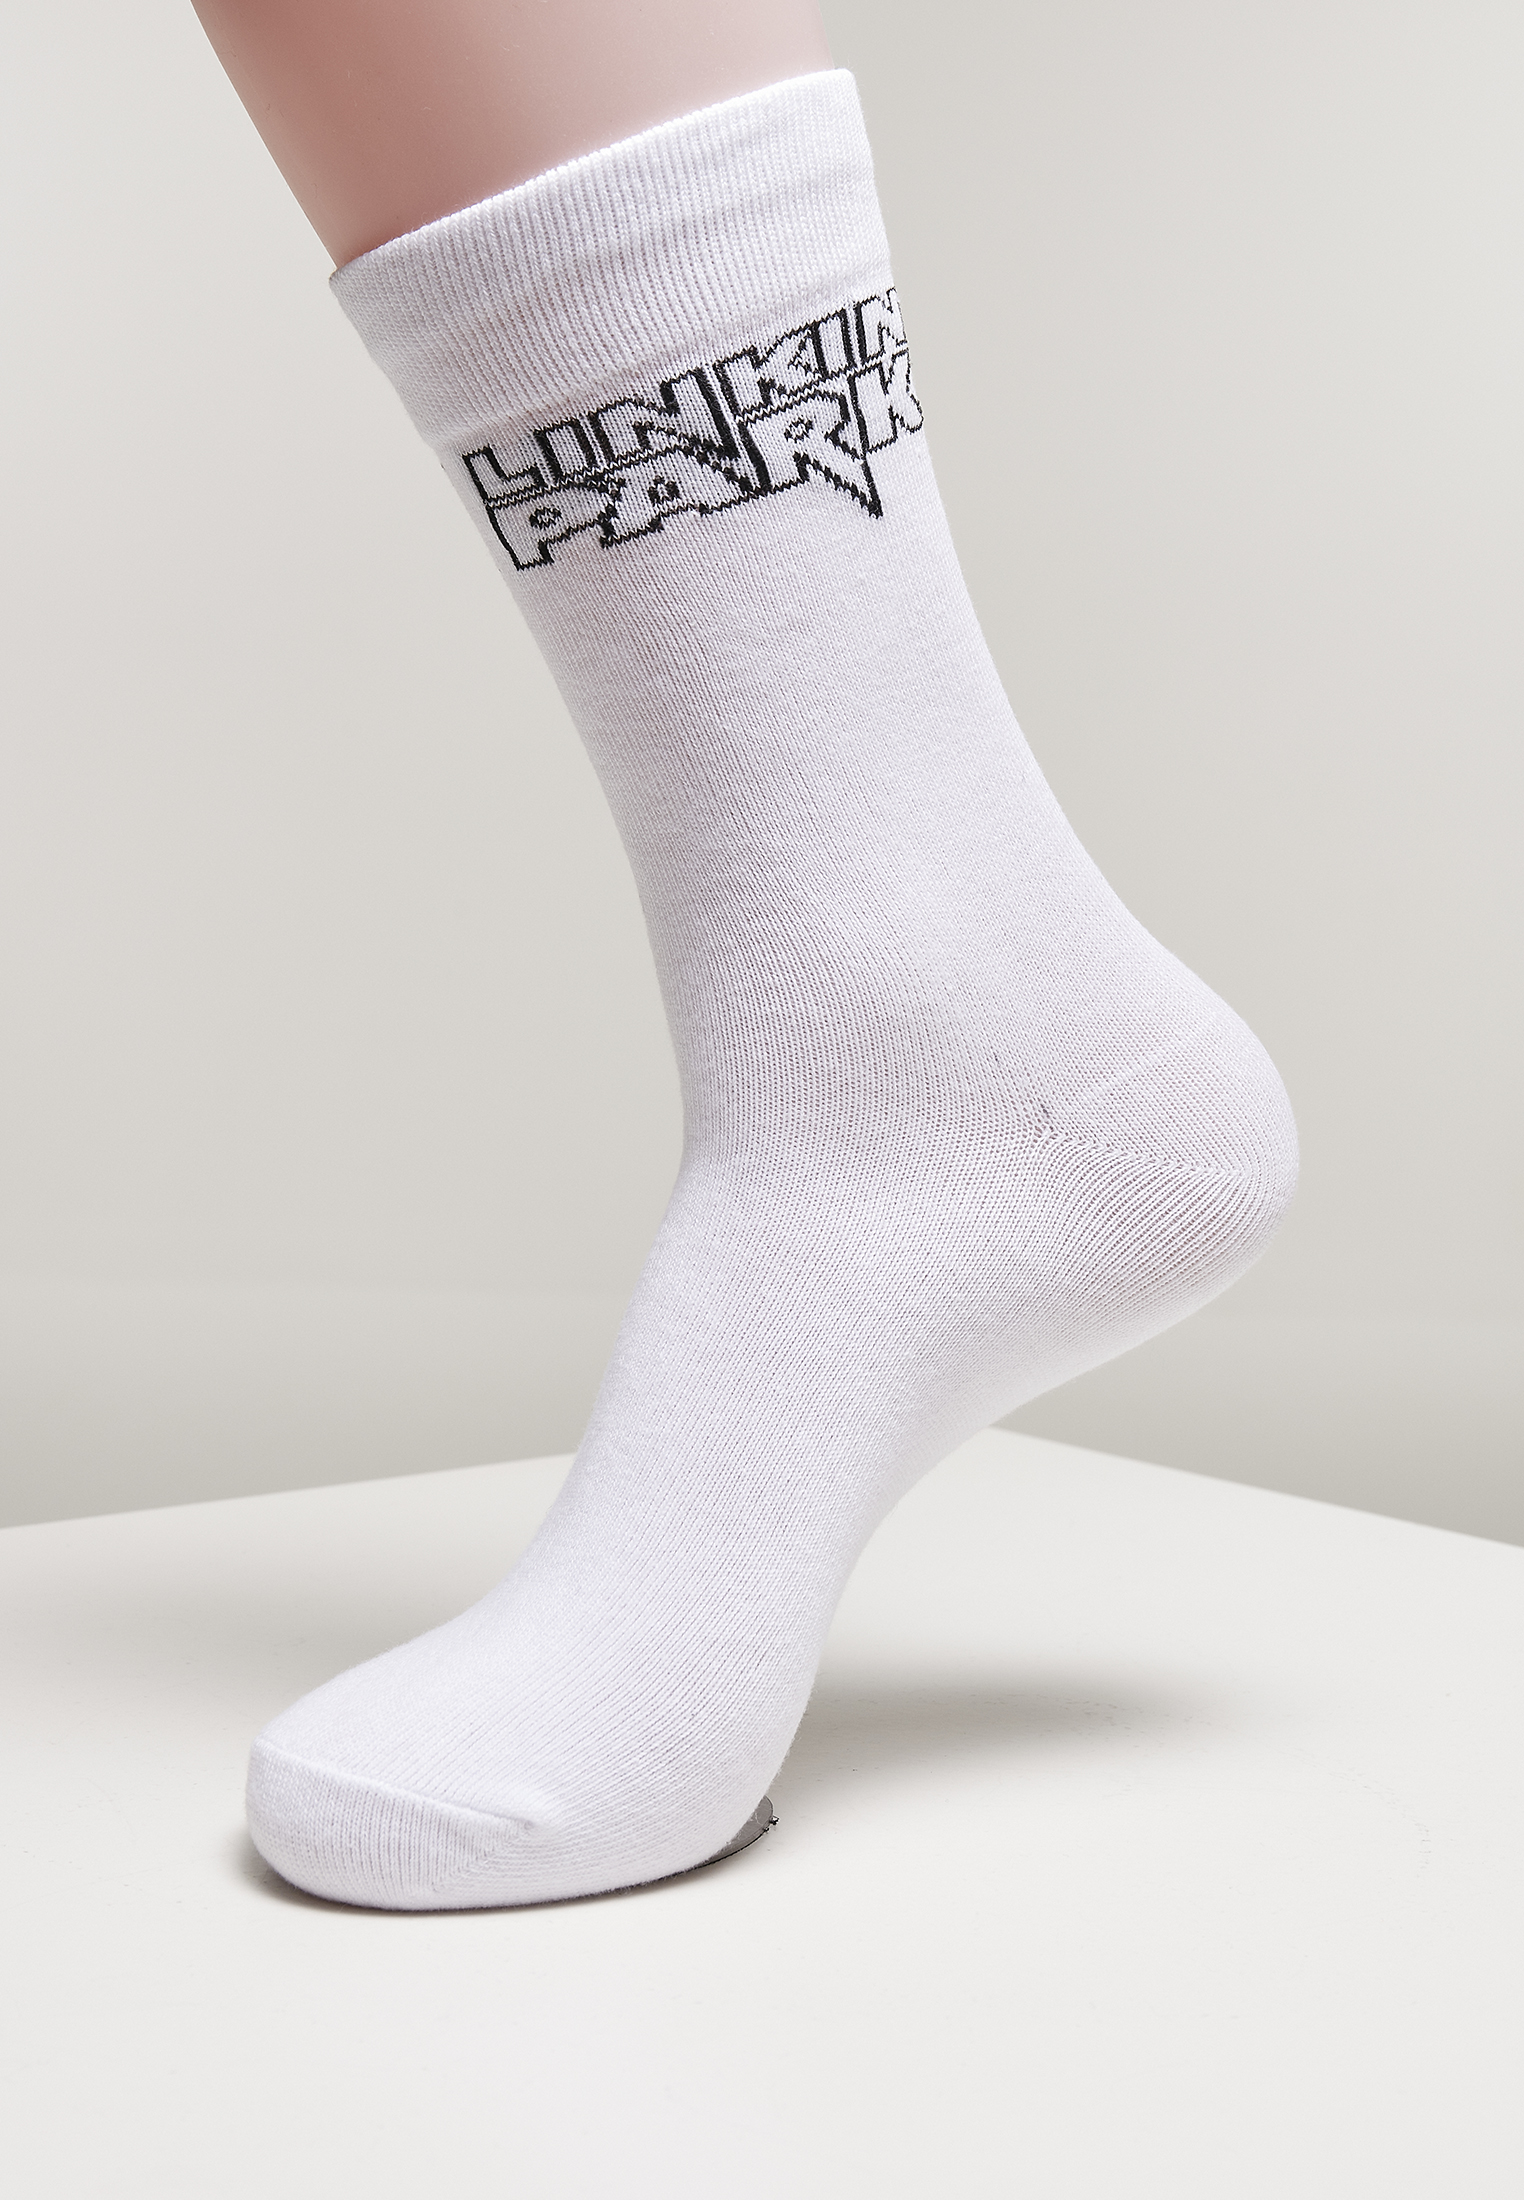 Socken Linkin Park Socks 2-Pack in Farbe black/white